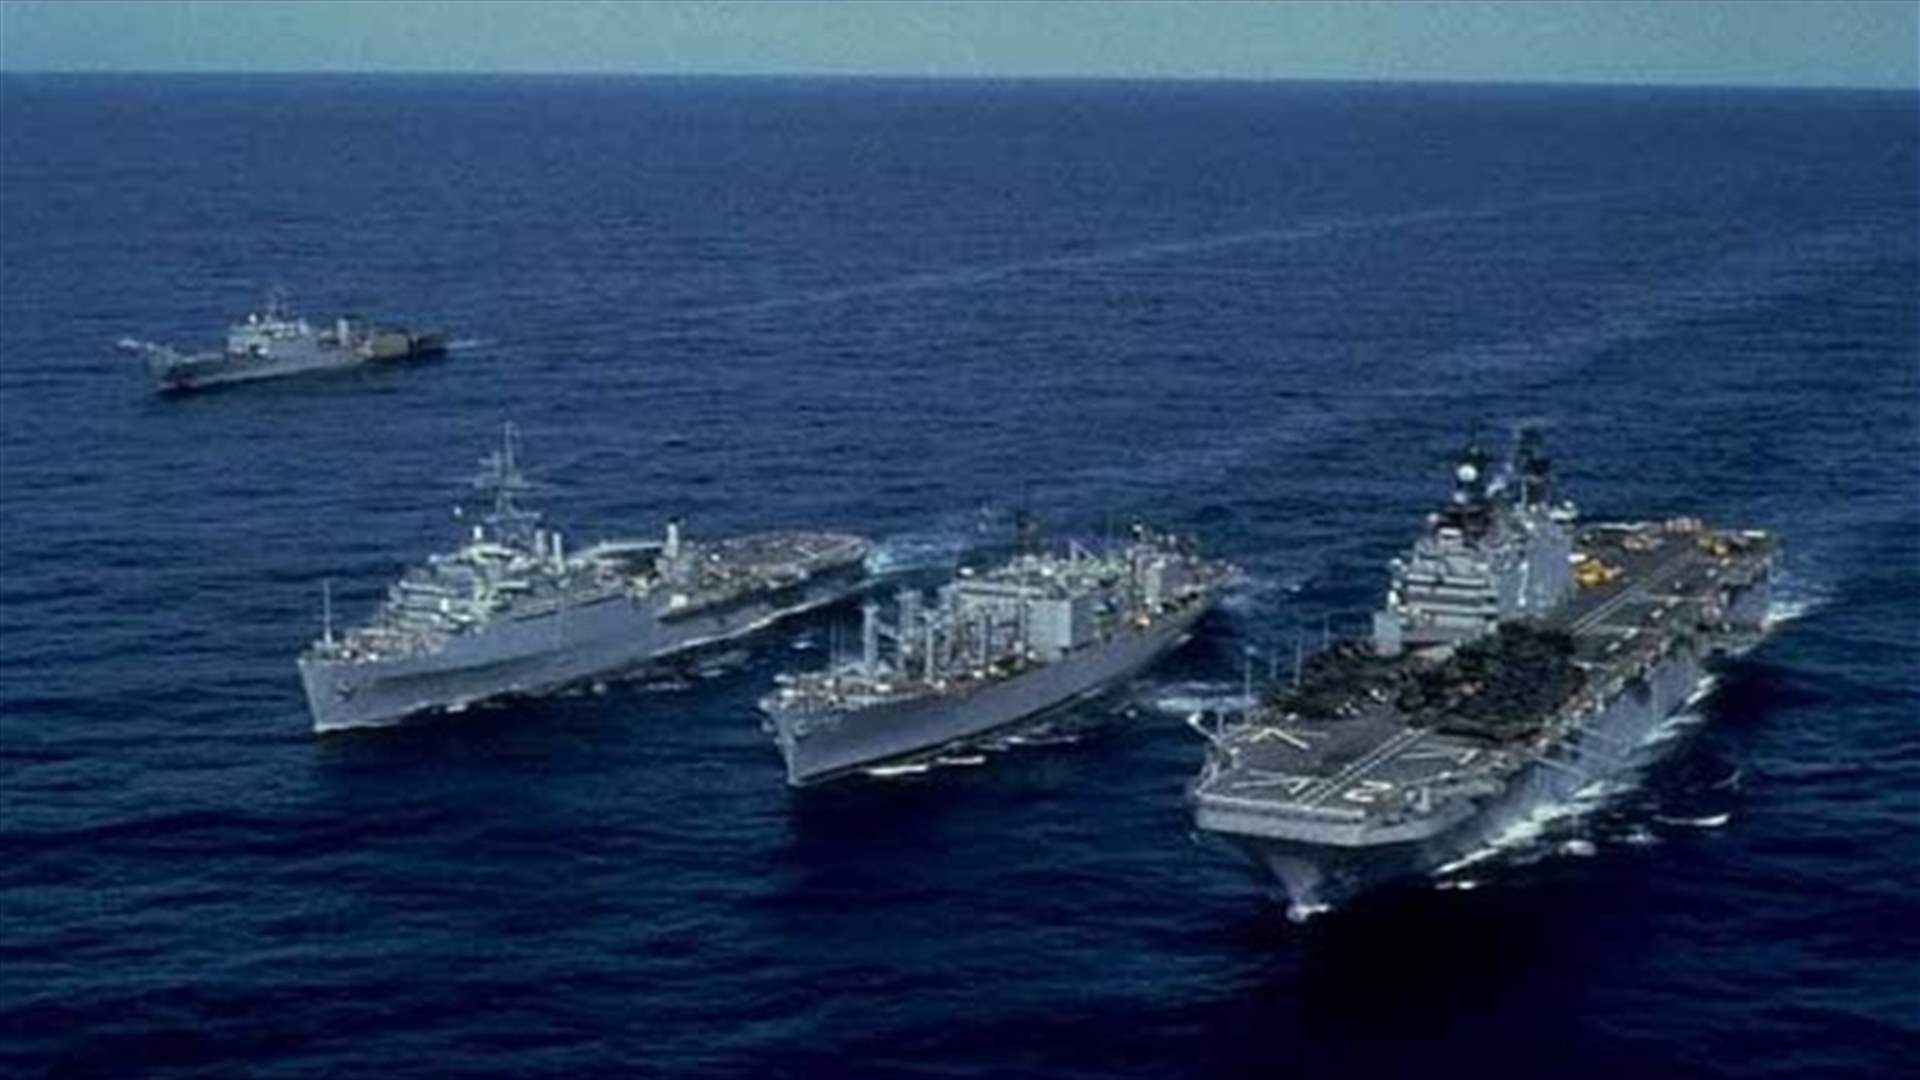 Iran tells Saudi navy vessels to avoid its waters